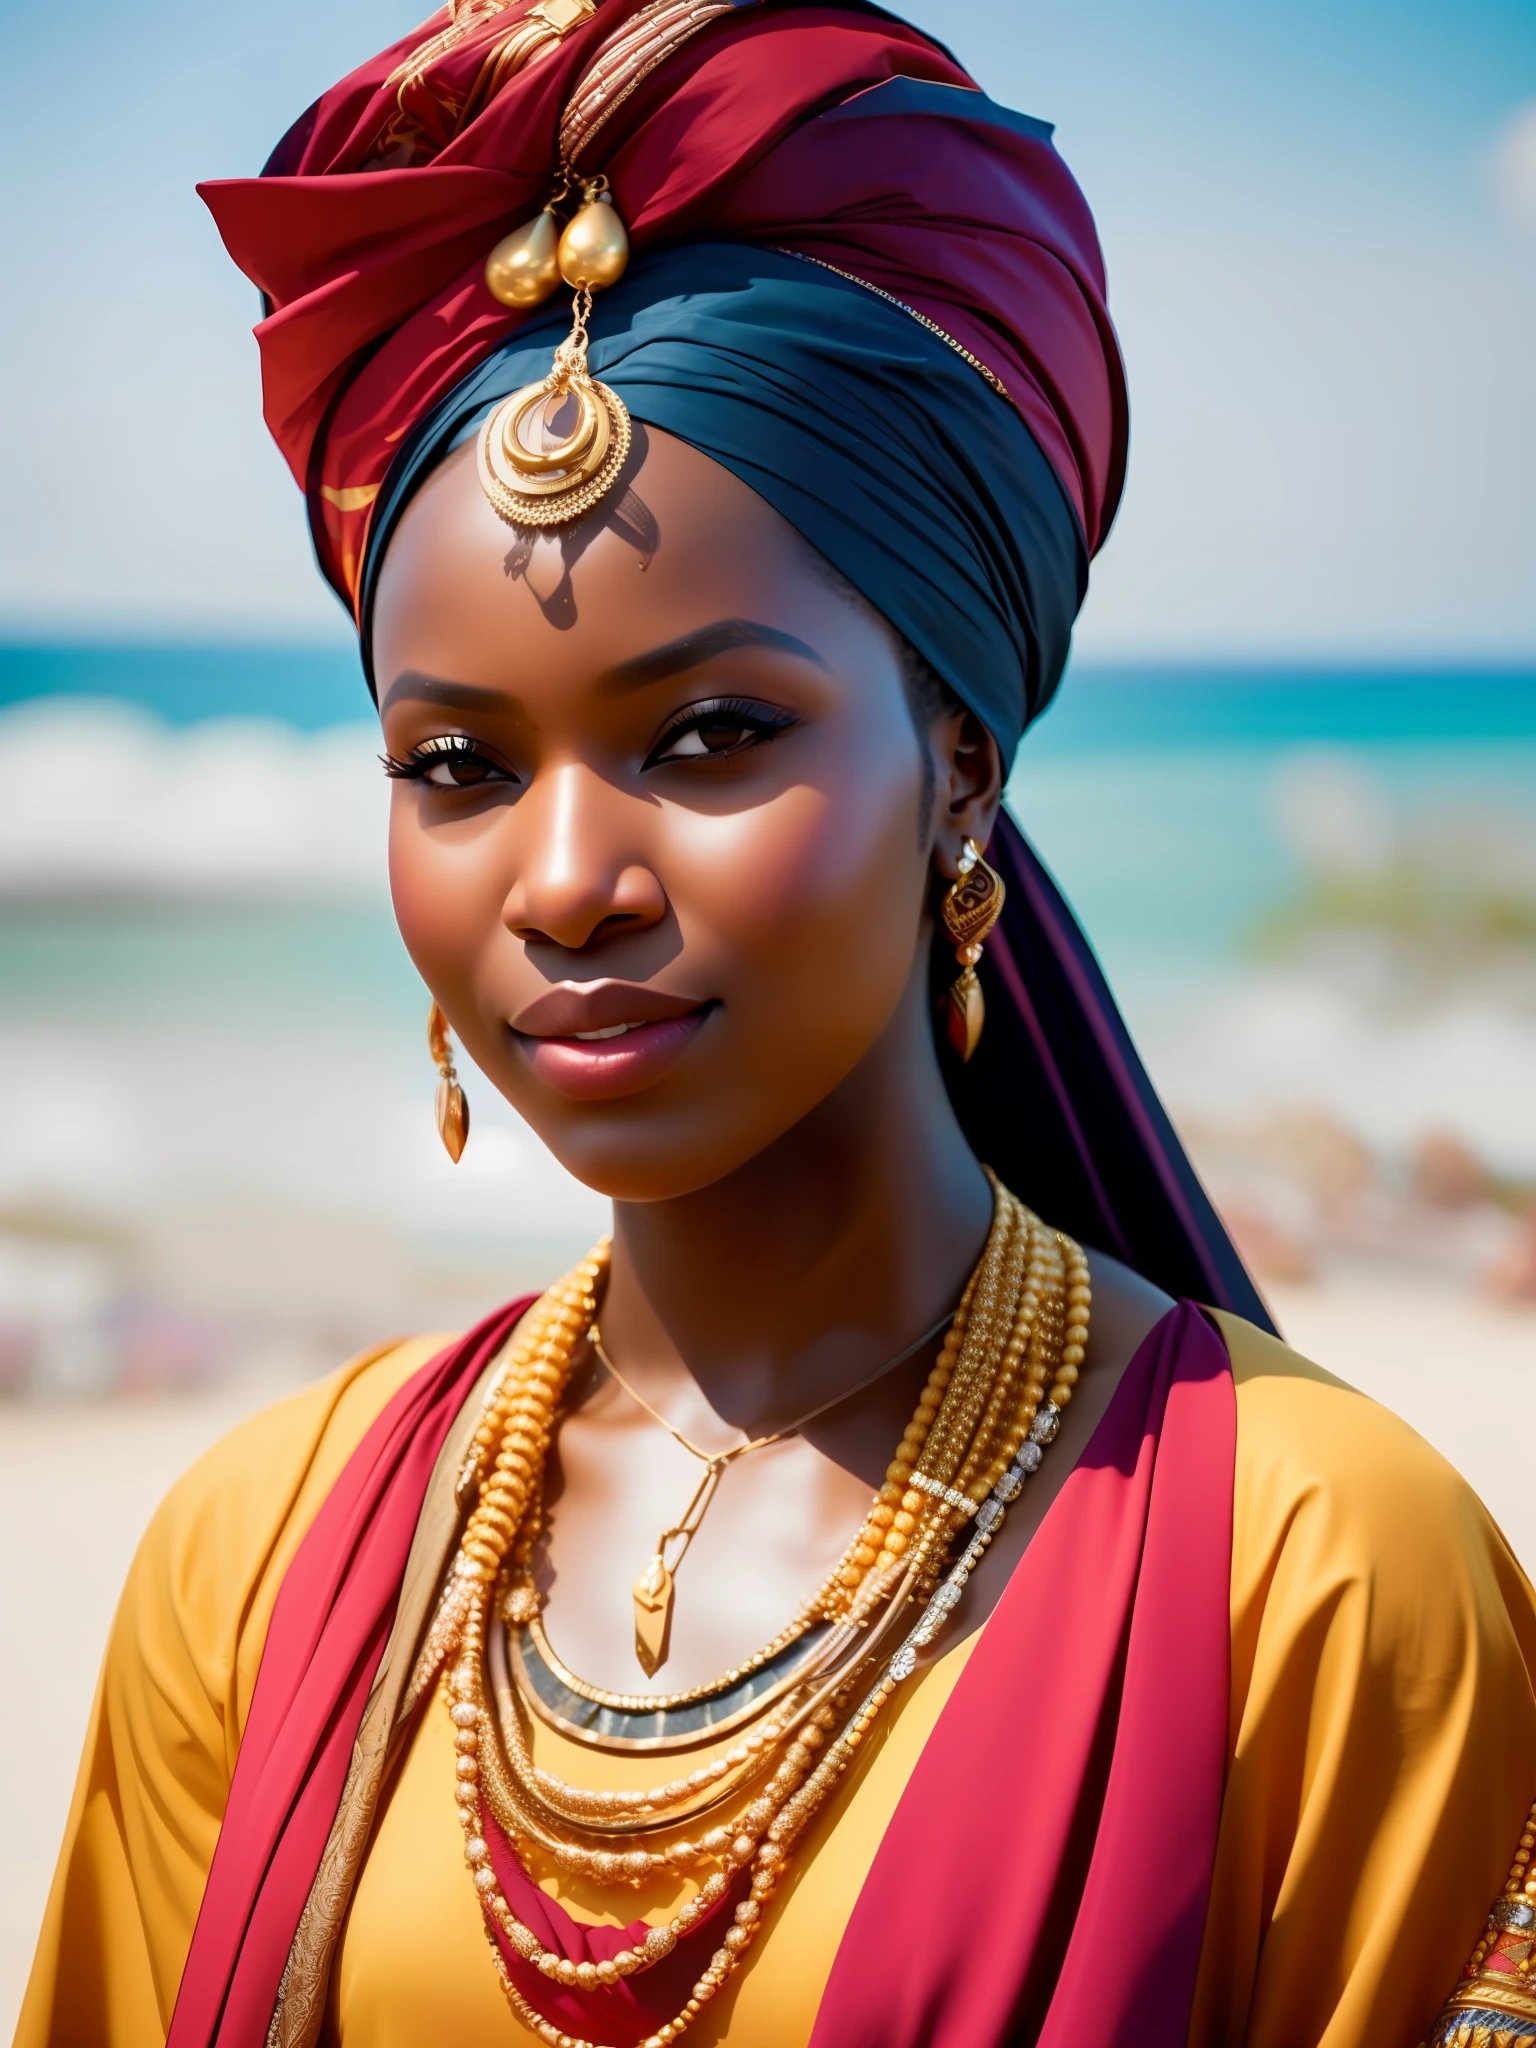 fking_الخيال العلمي, fking_الخيال العلمي_v2, صورة لامرأة أفريقية شابة جميلة جداً, أمام الشاطئ, الملابس الملونة الغنية, العمامة والمجوهرات الأفريقية الذهبية, عن قرب, الموقف الملكي والموقف. fking_سينما_v2. fking_سينما_v2